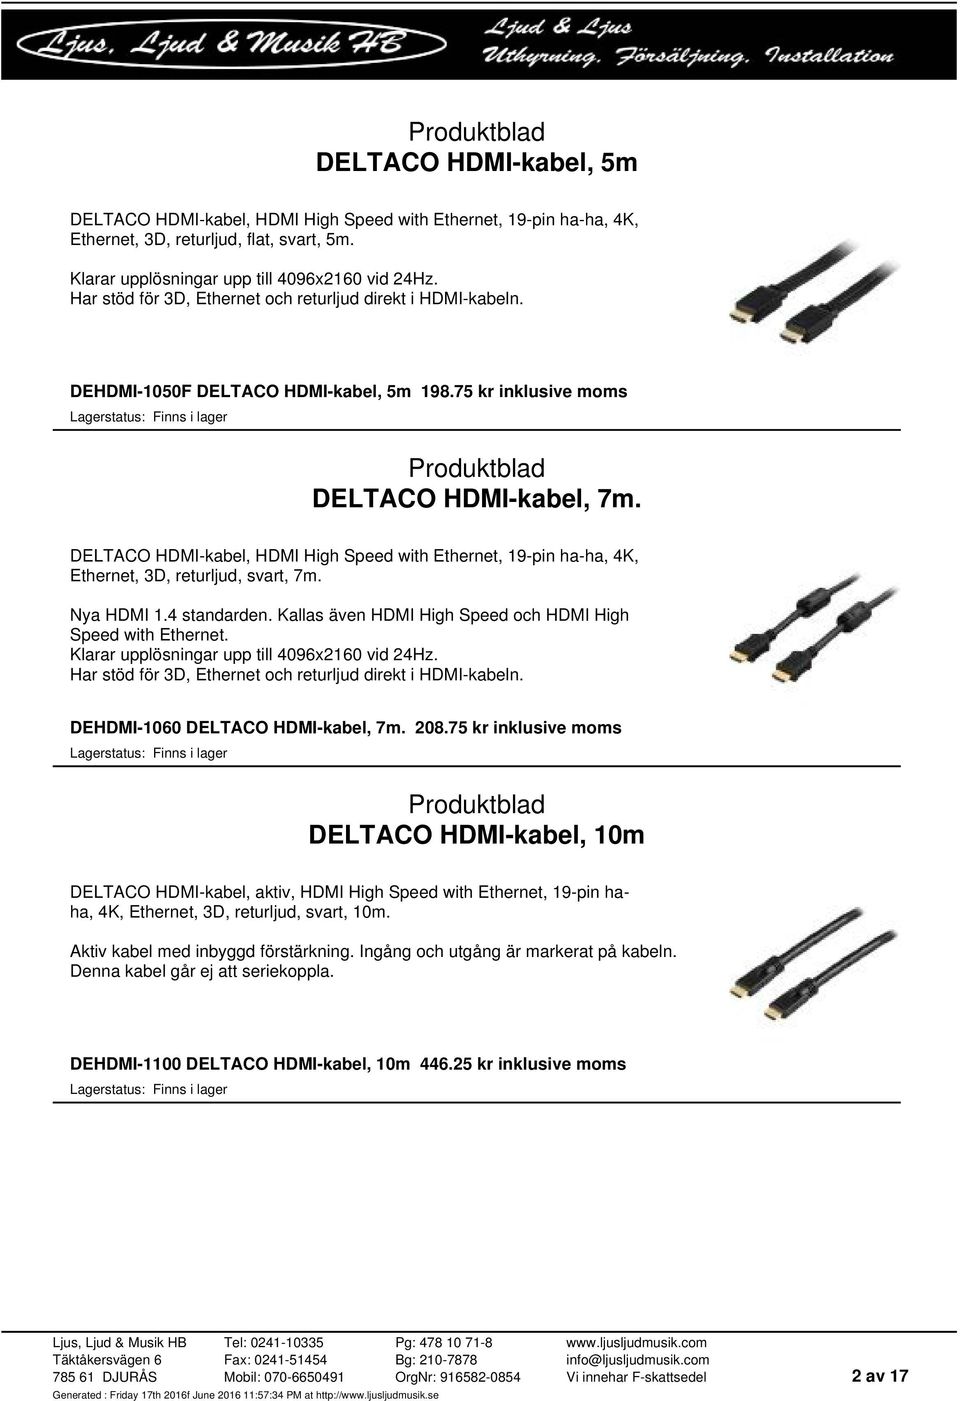 DELTACO HDMI-kabel, HDMI High Speed with Ethernet, 19-pin ha-ha, 4K, Ethernet, 3D, returljud, svart, 7m. Nya HDMI 1.4 standarden. Kallas även HDMI High Speed och HDMI High Speed with Ethernet.